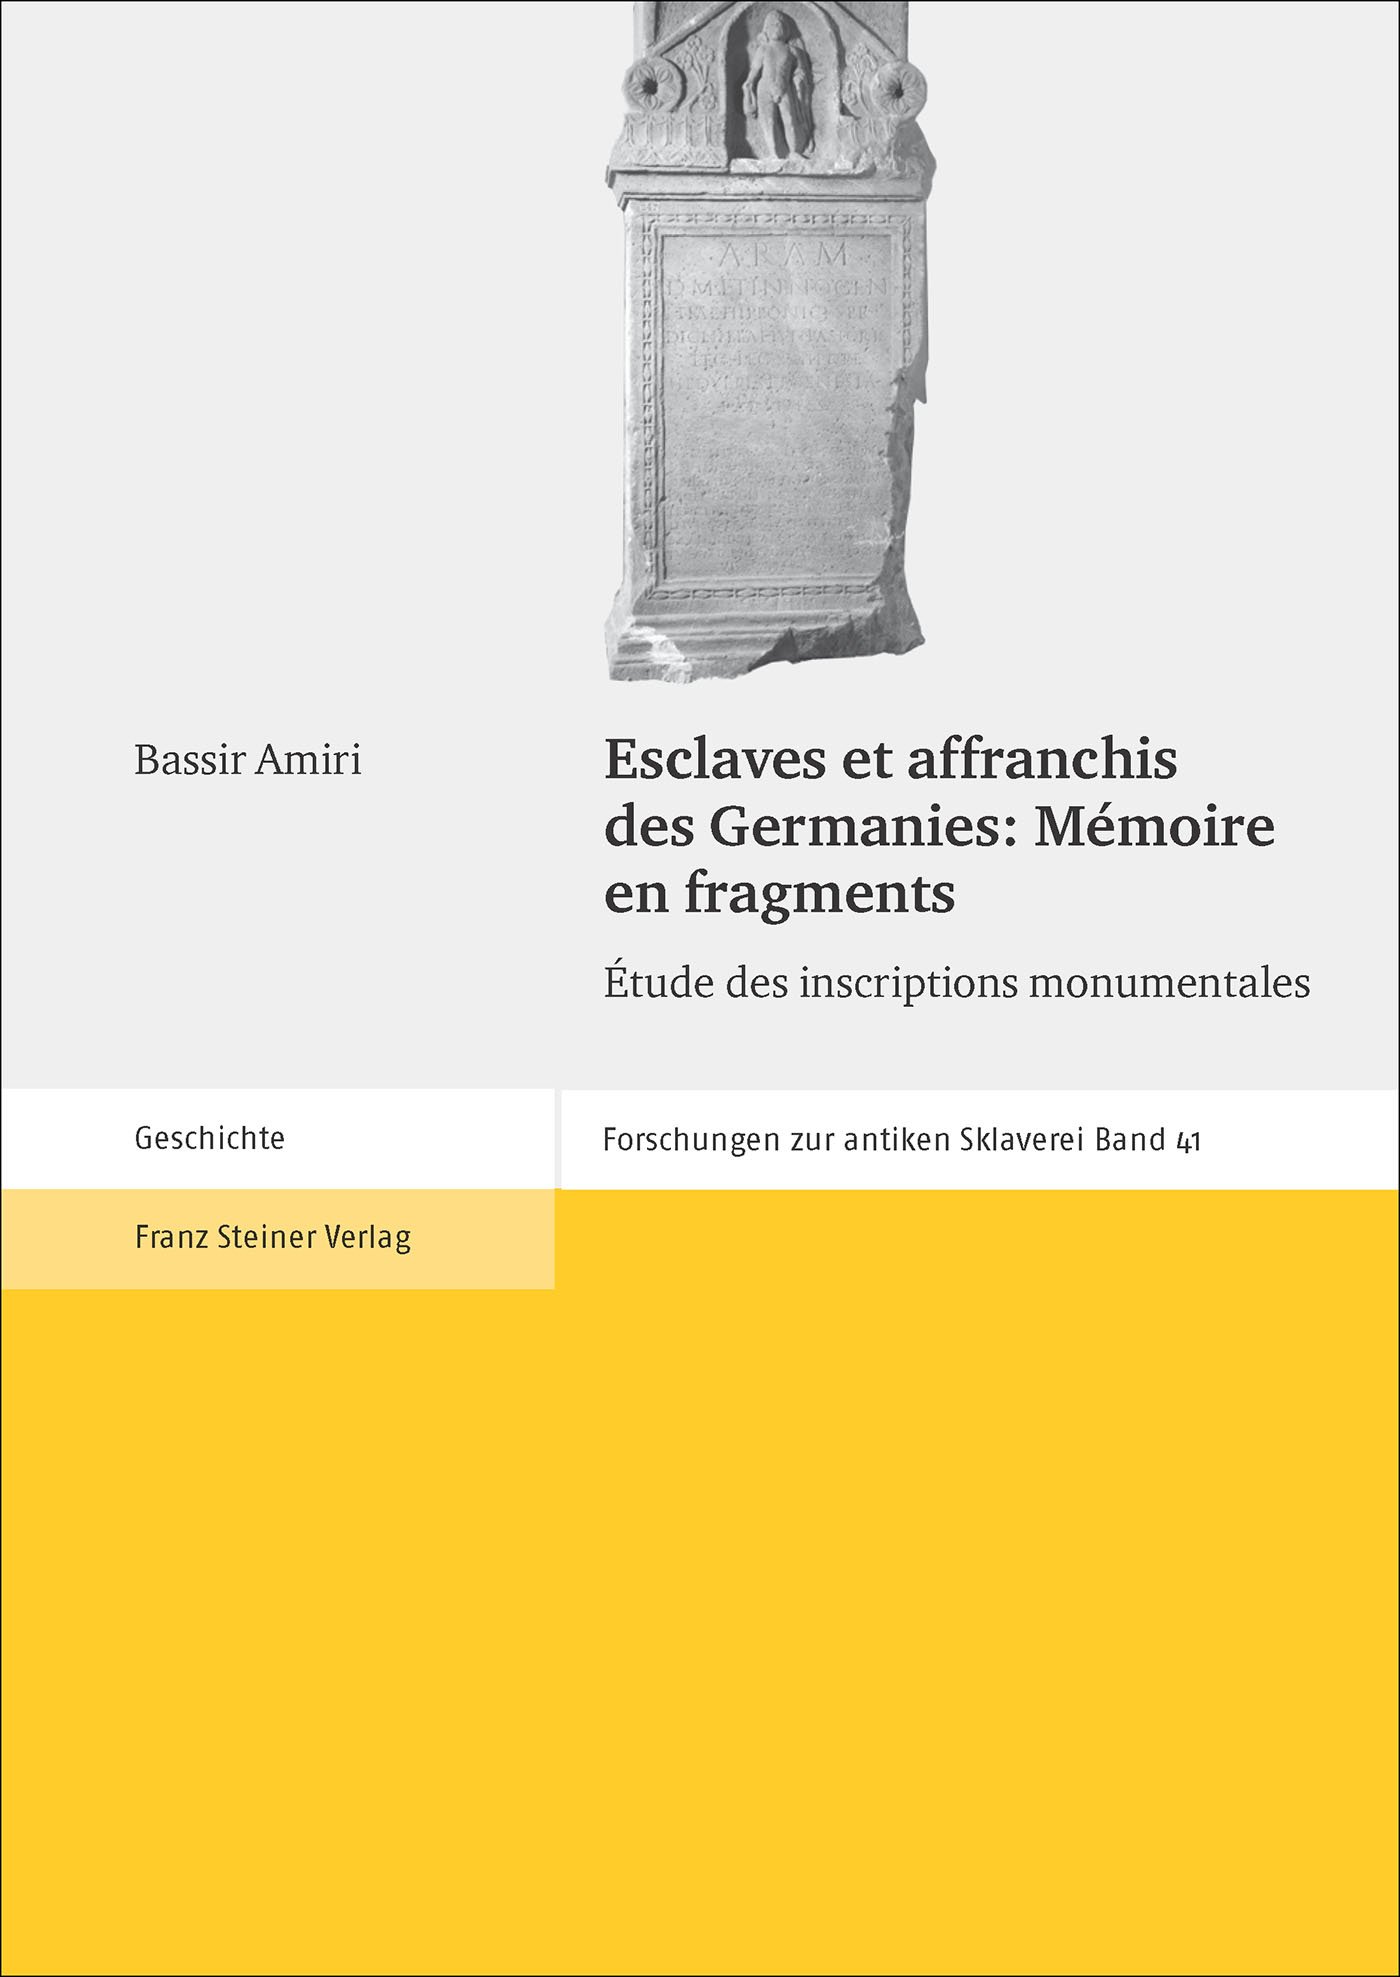 Esclaves et affranchis des Germanies: Mémoire en fragments